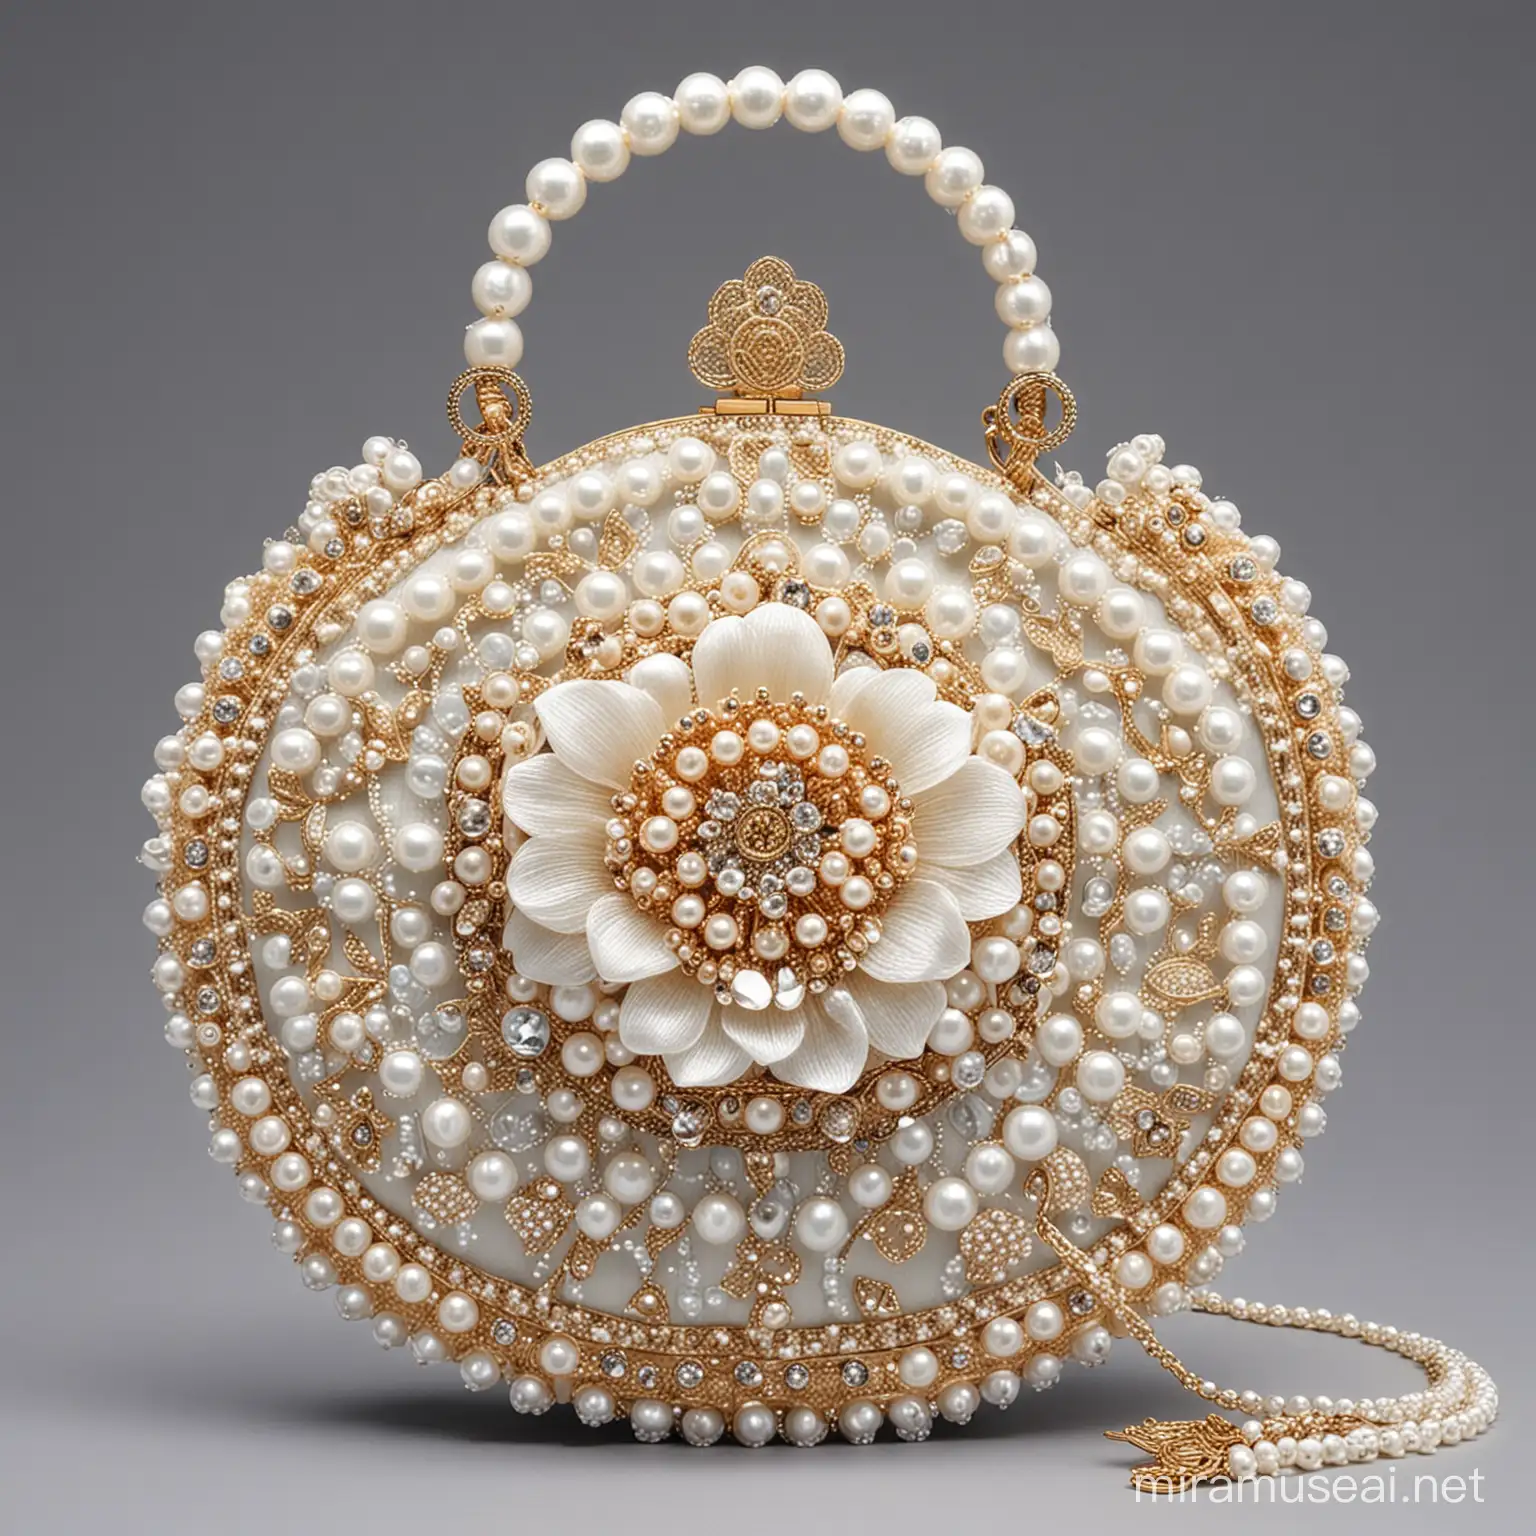 时尚手拿包，圆圈环吊着下面的宋代头冠包，头冠包像一个莲花形状，上面由珍珠和花朵组成，高清杰作